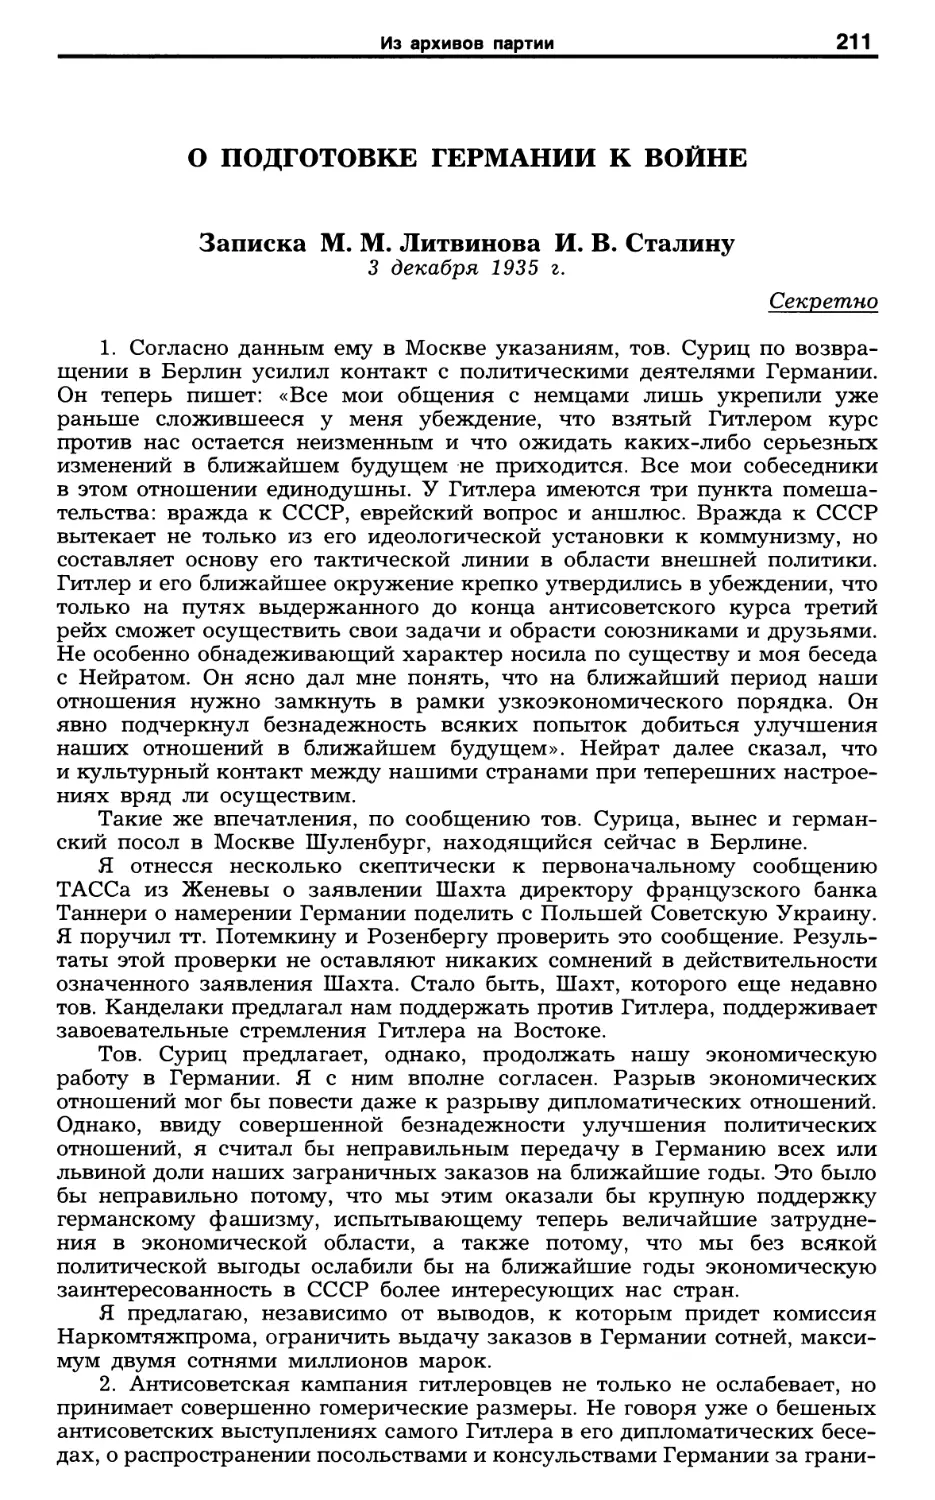 О подготовке Германии к войне. Записка М. М. Литвинова И. В. Сталину. 3 декабря 1935 г